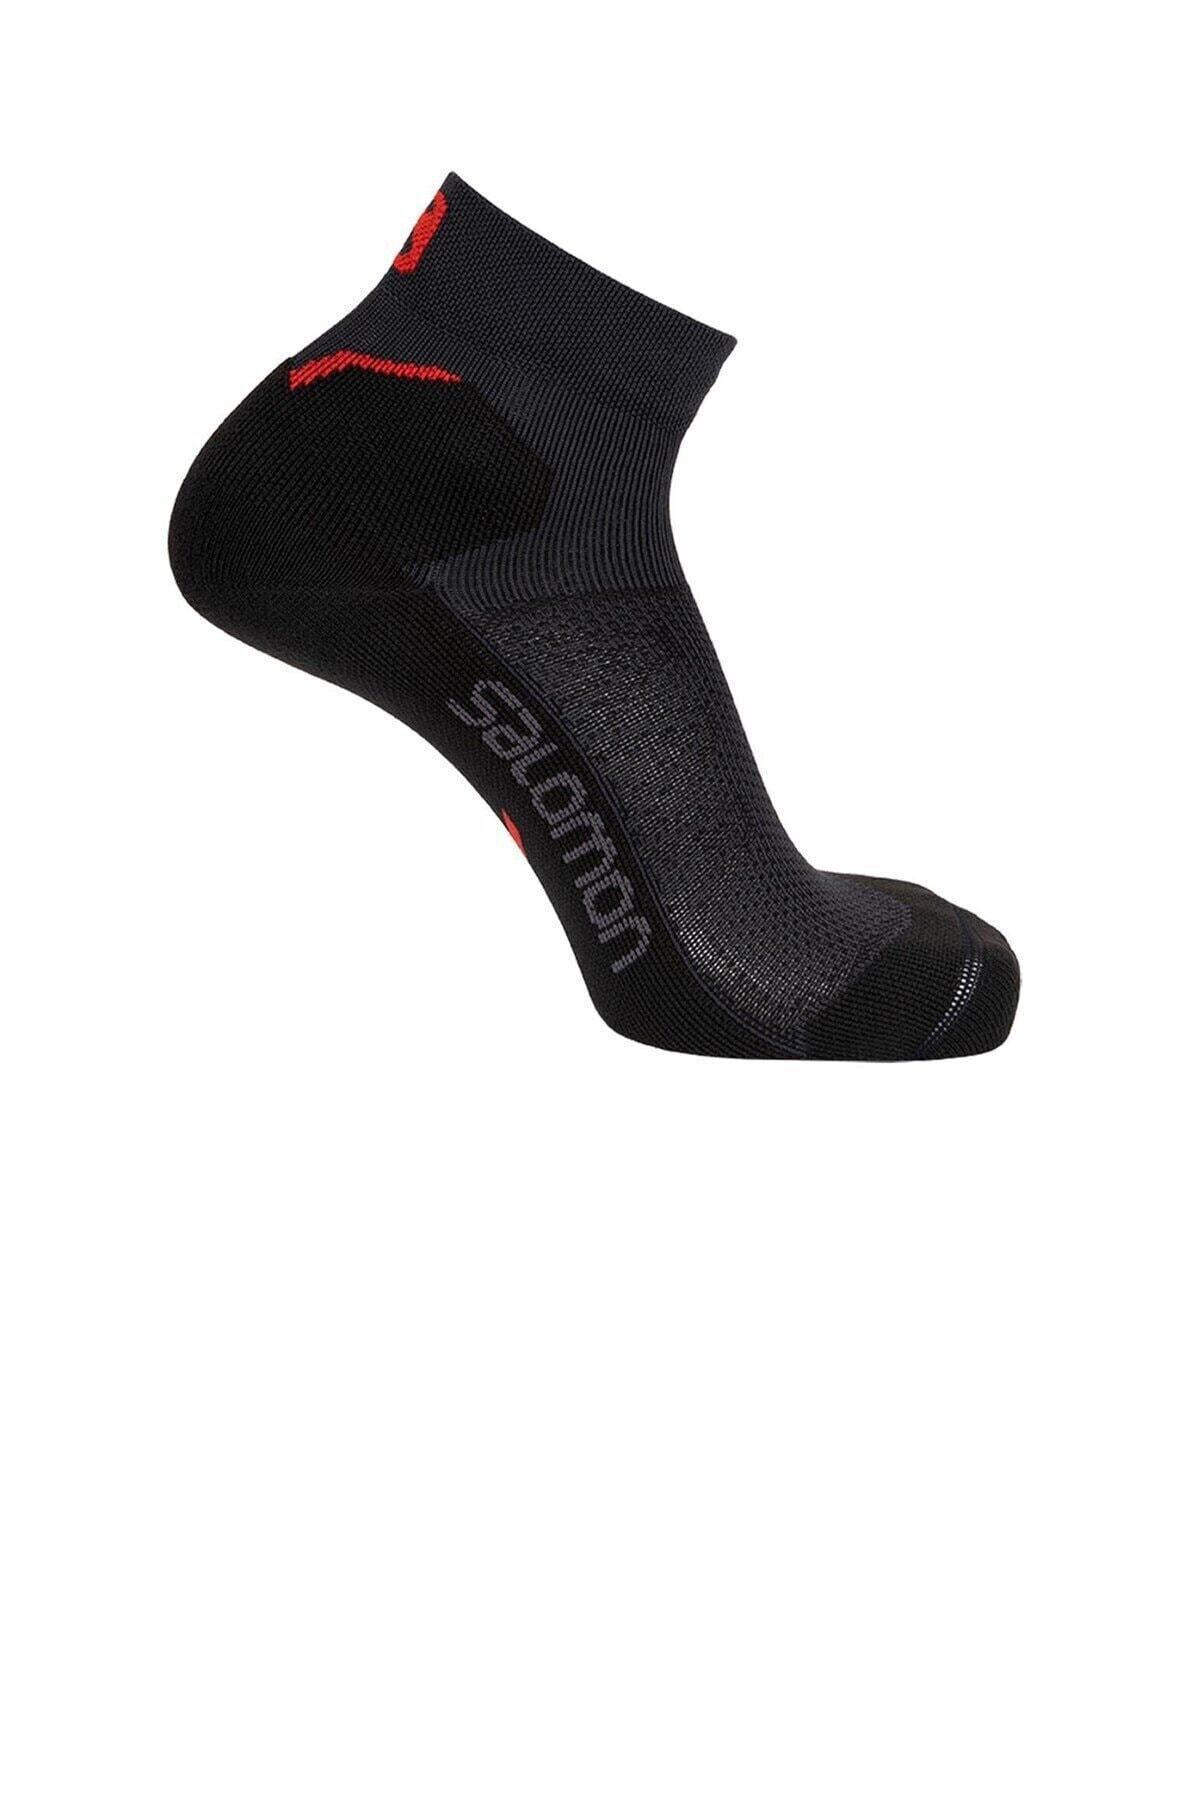 Salomon Speedcross Ankle Dx Sx Unısex Kırmızı Çorap